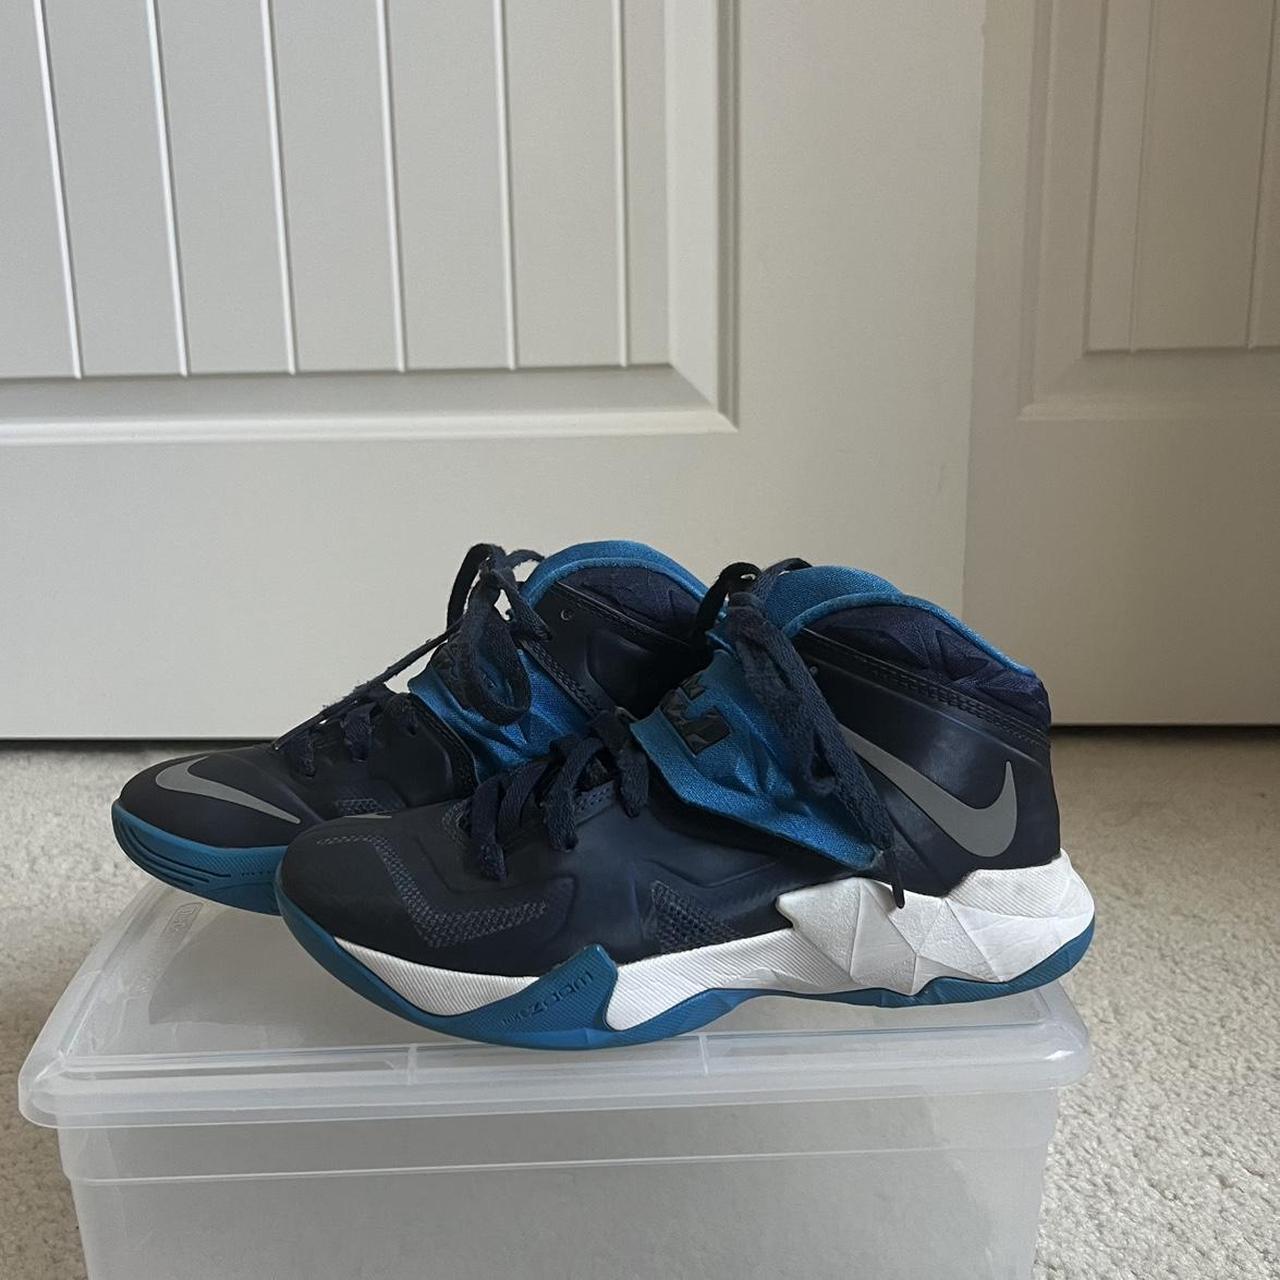 lebron james shoes 10 blue